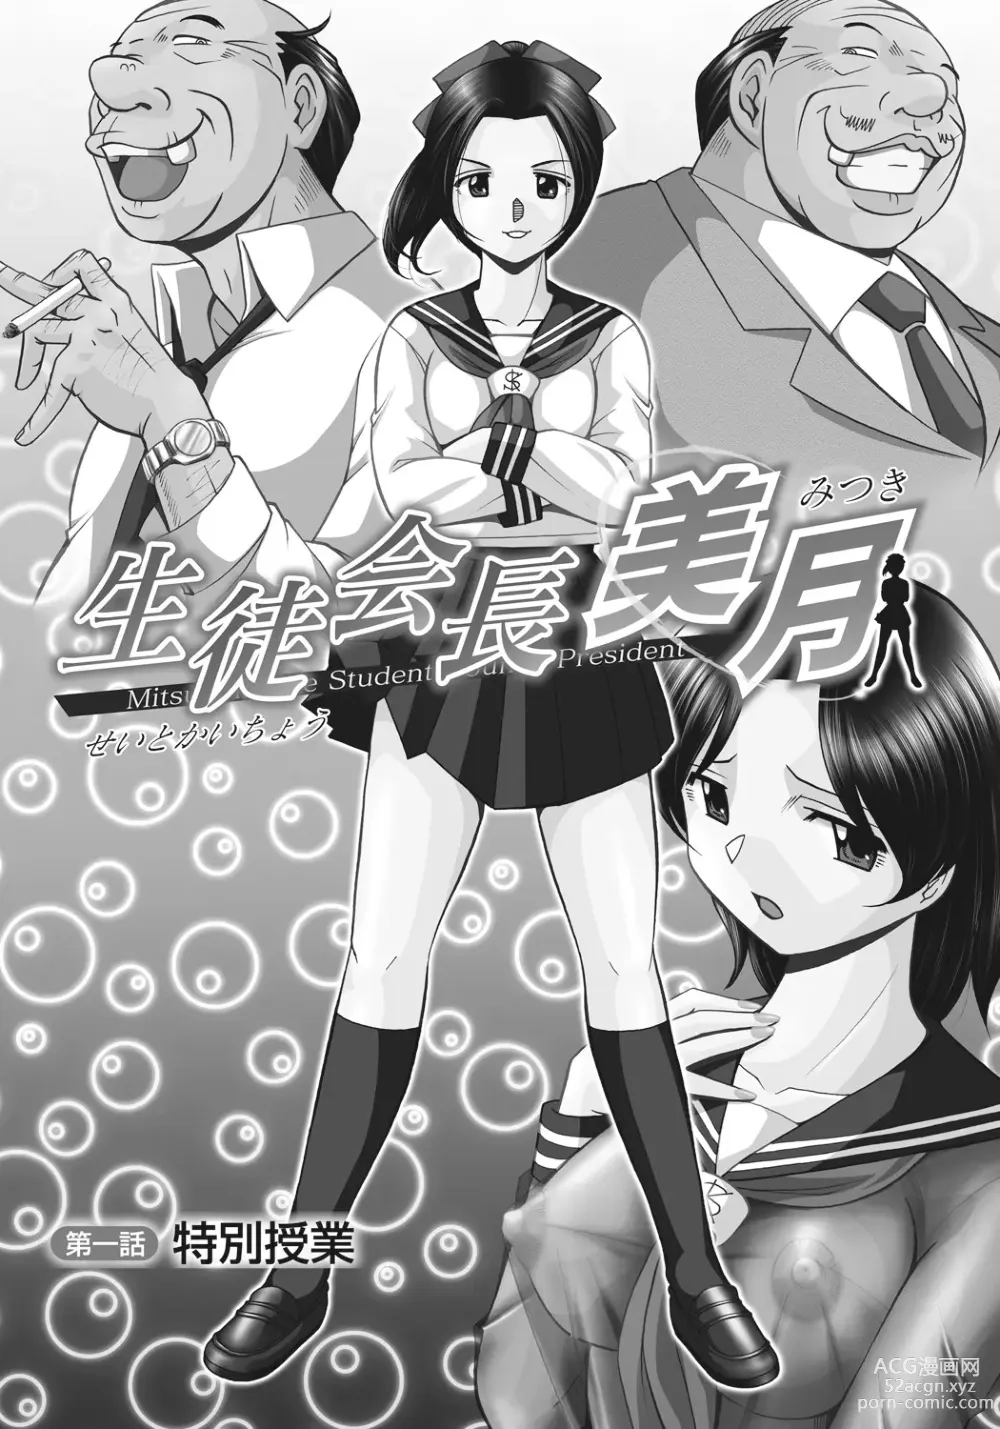 Page 4 of manga Student Council President Mitsuki